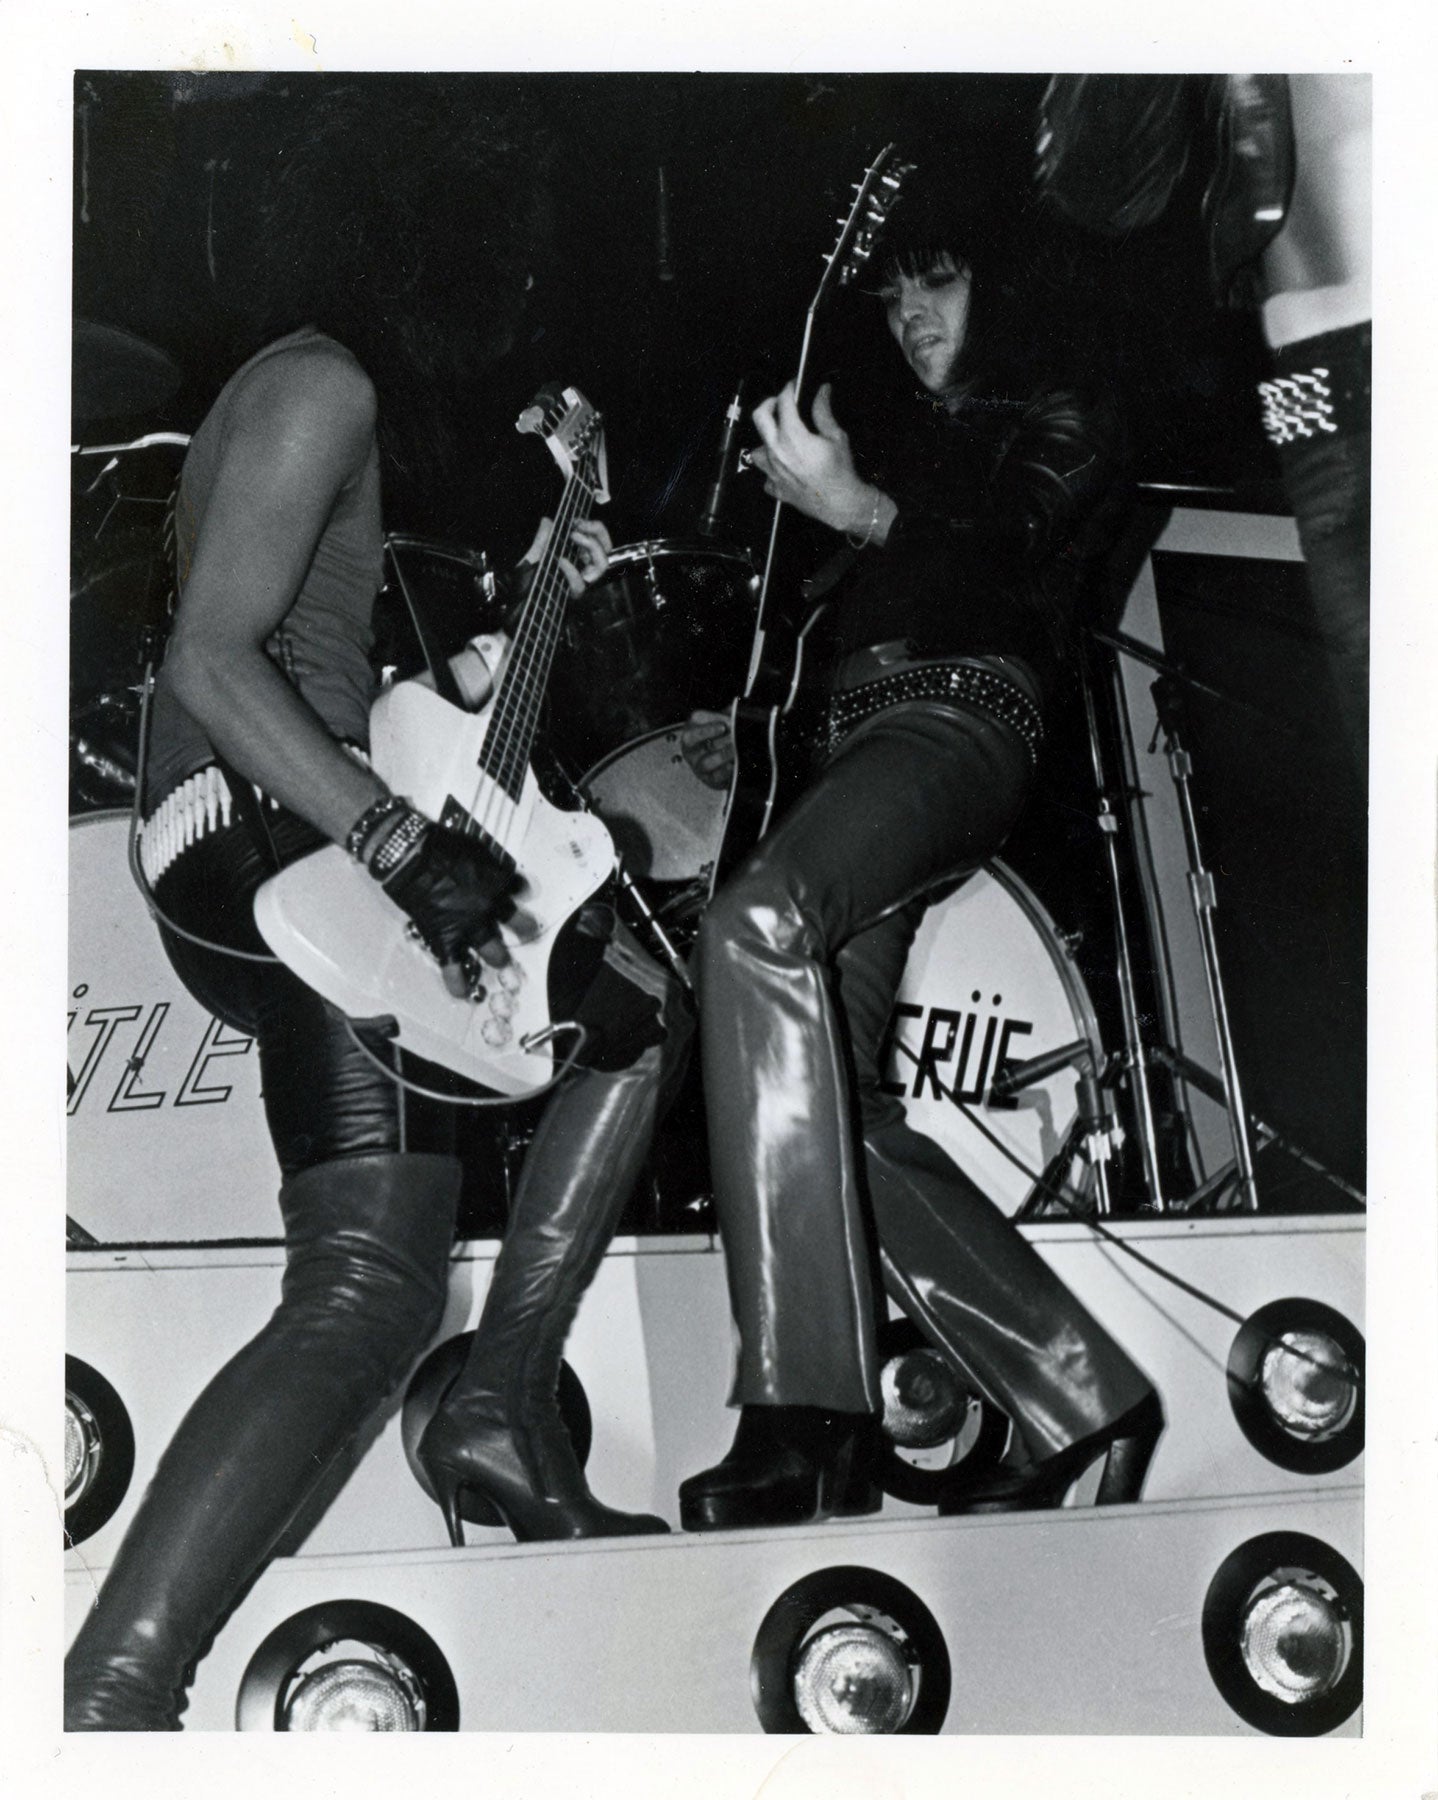 Nikki Sixx and Mick Mars at the Sunset Strip 1981